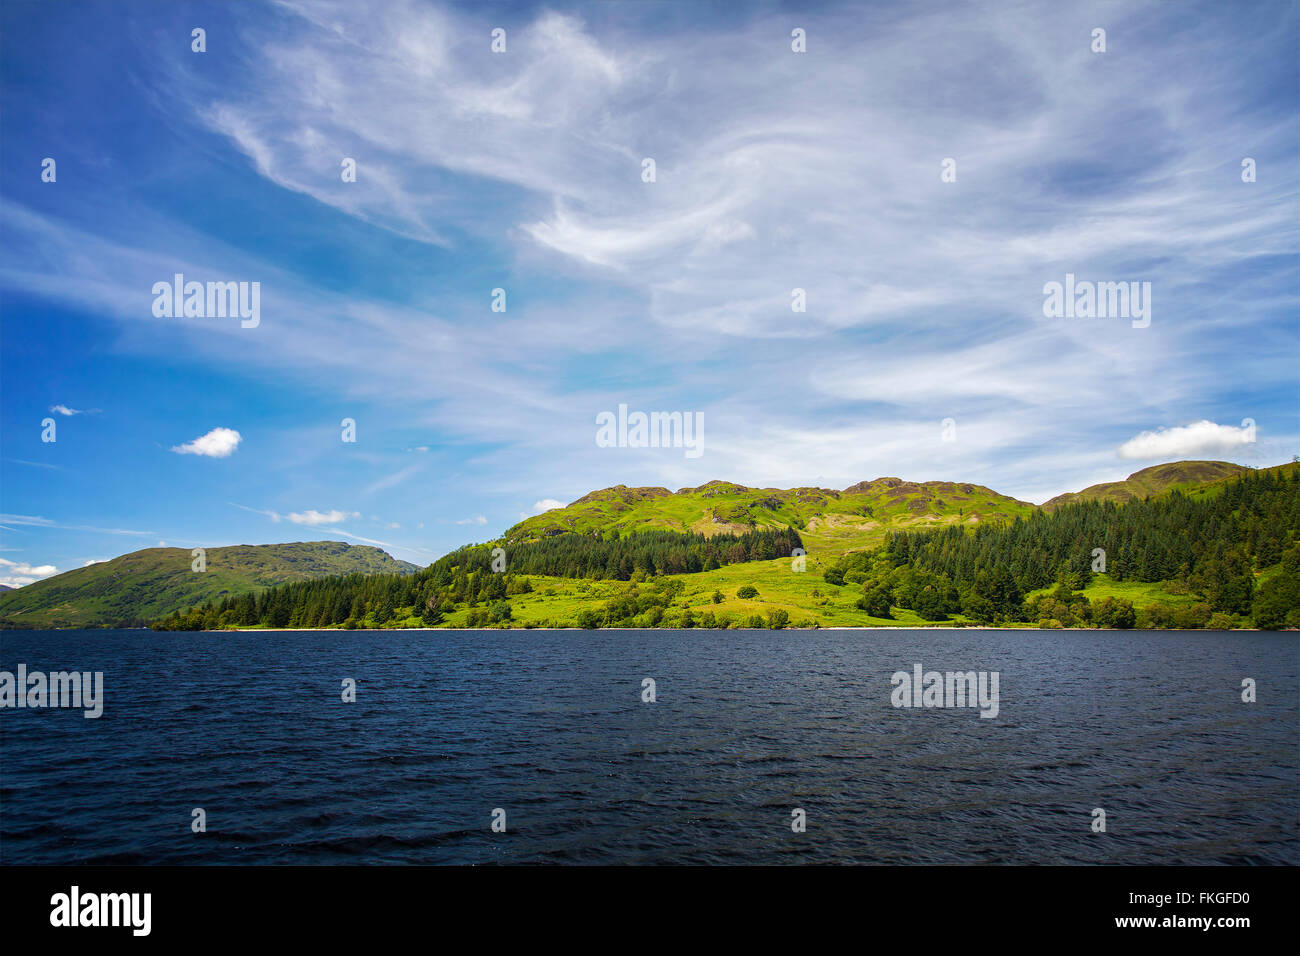 Imagen de Loch Katrine en las Highlands escocesas. Foto de stock